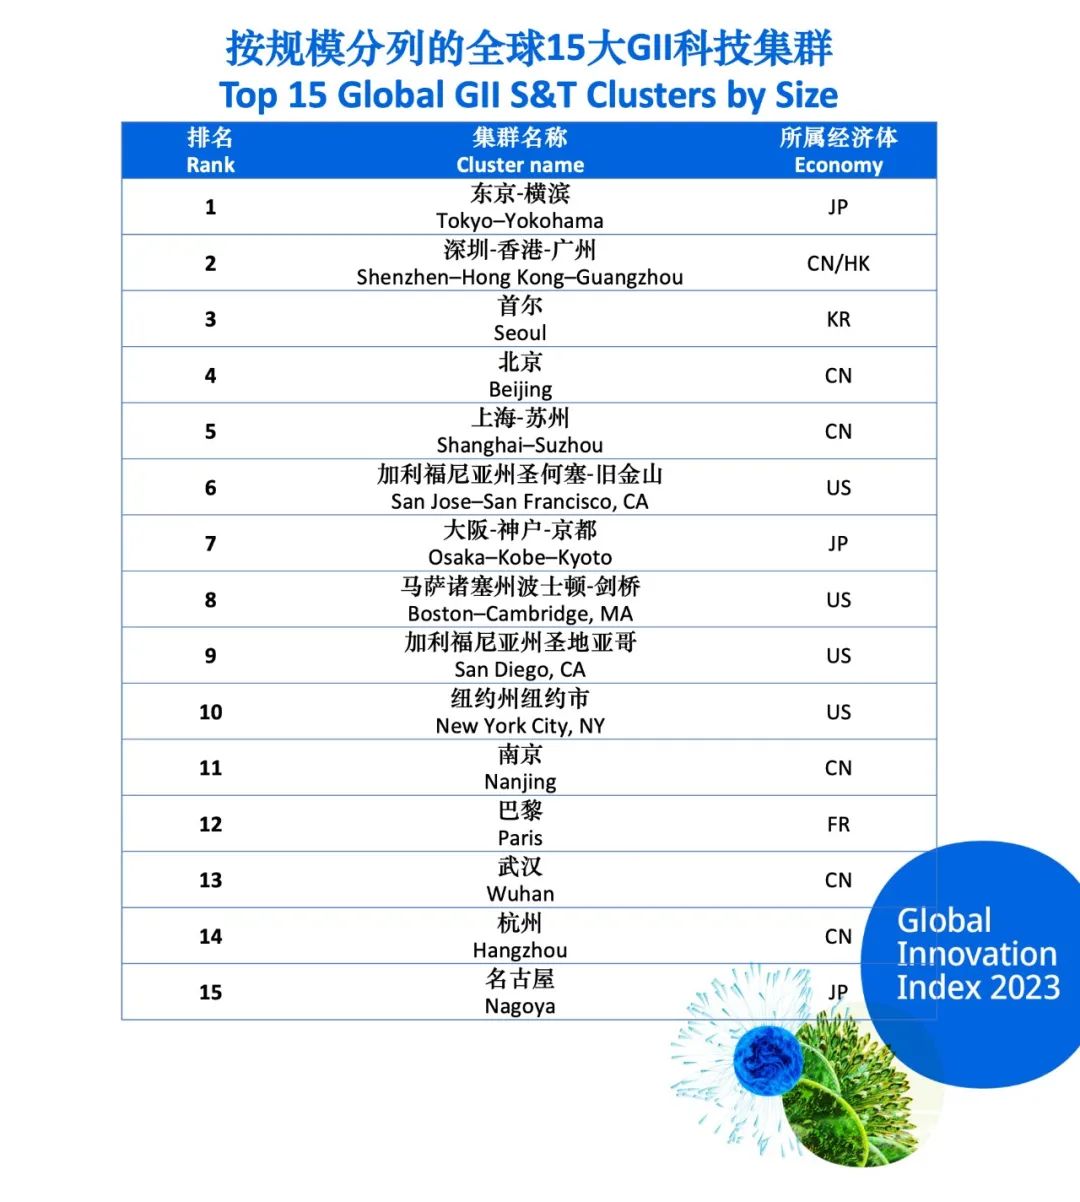 聚焦 | 世界知识产权组织发布“最佳科技集群”，中国是数量最多的国家